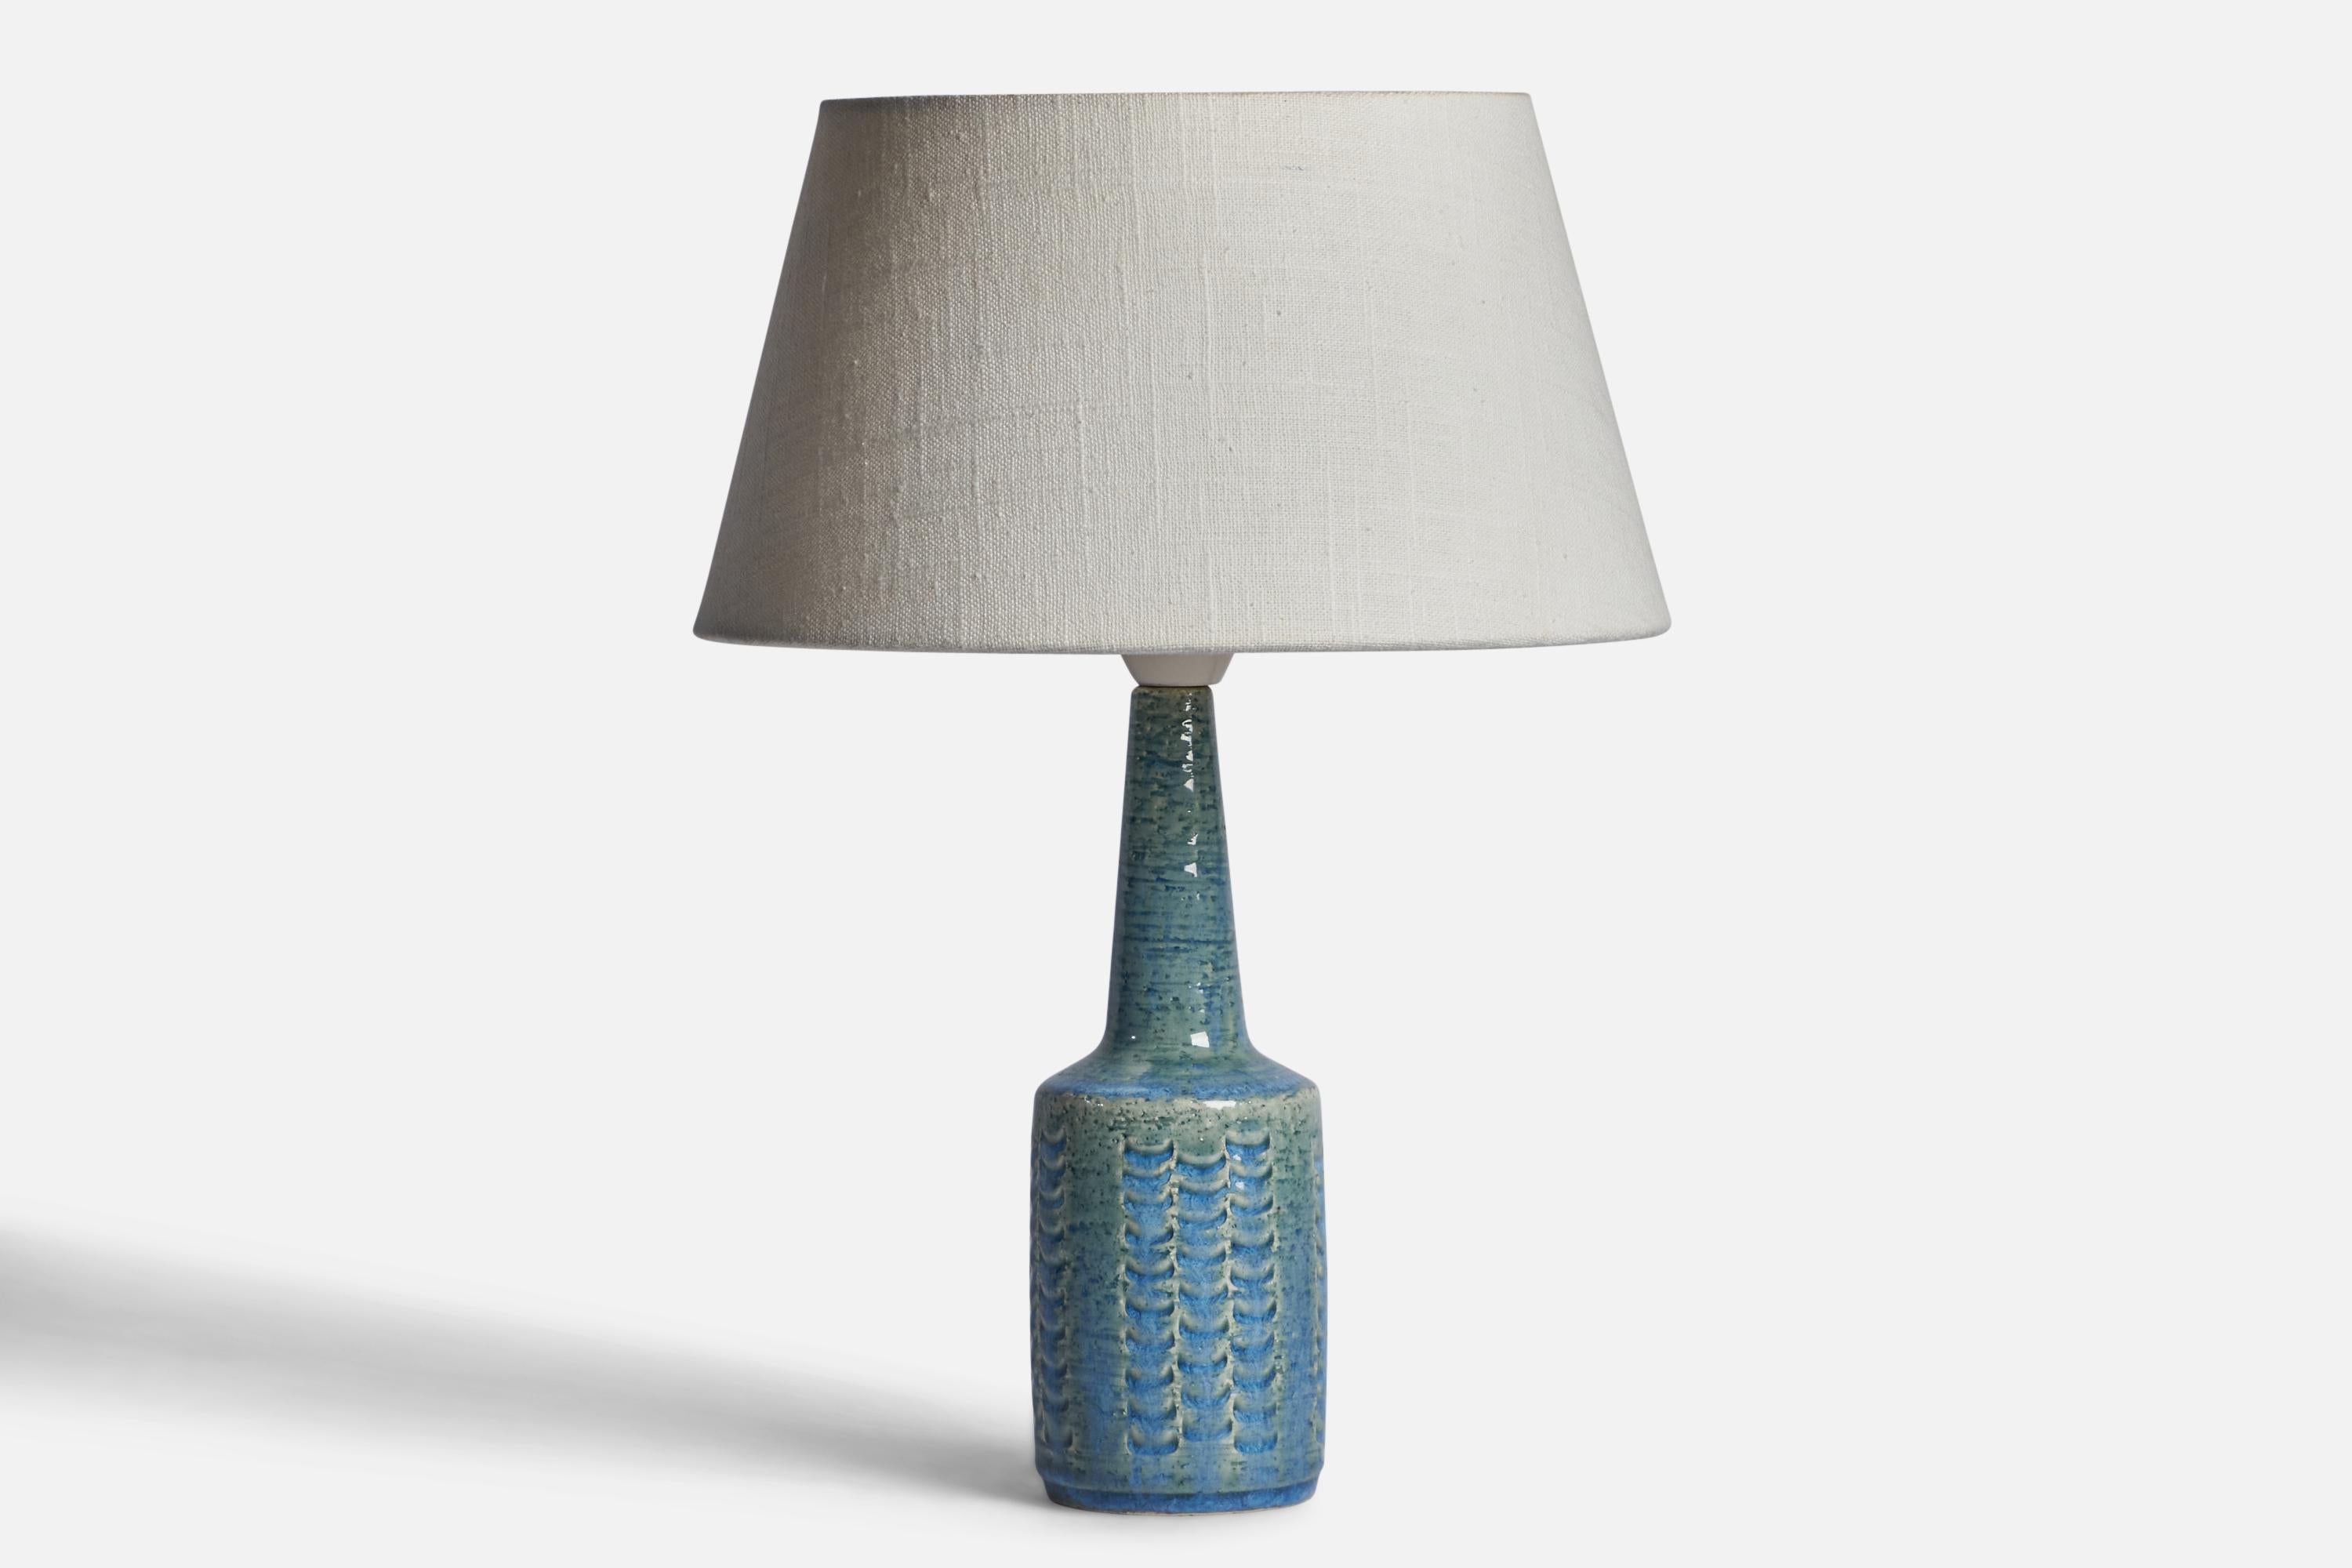 Lampe de table en grès émaillé bleu conçue par Per & Annelise Linneman-Schmidt et produite par Palshus, Danemark, années 1960.

Dimensions de la lampe (pouces) : 11.35